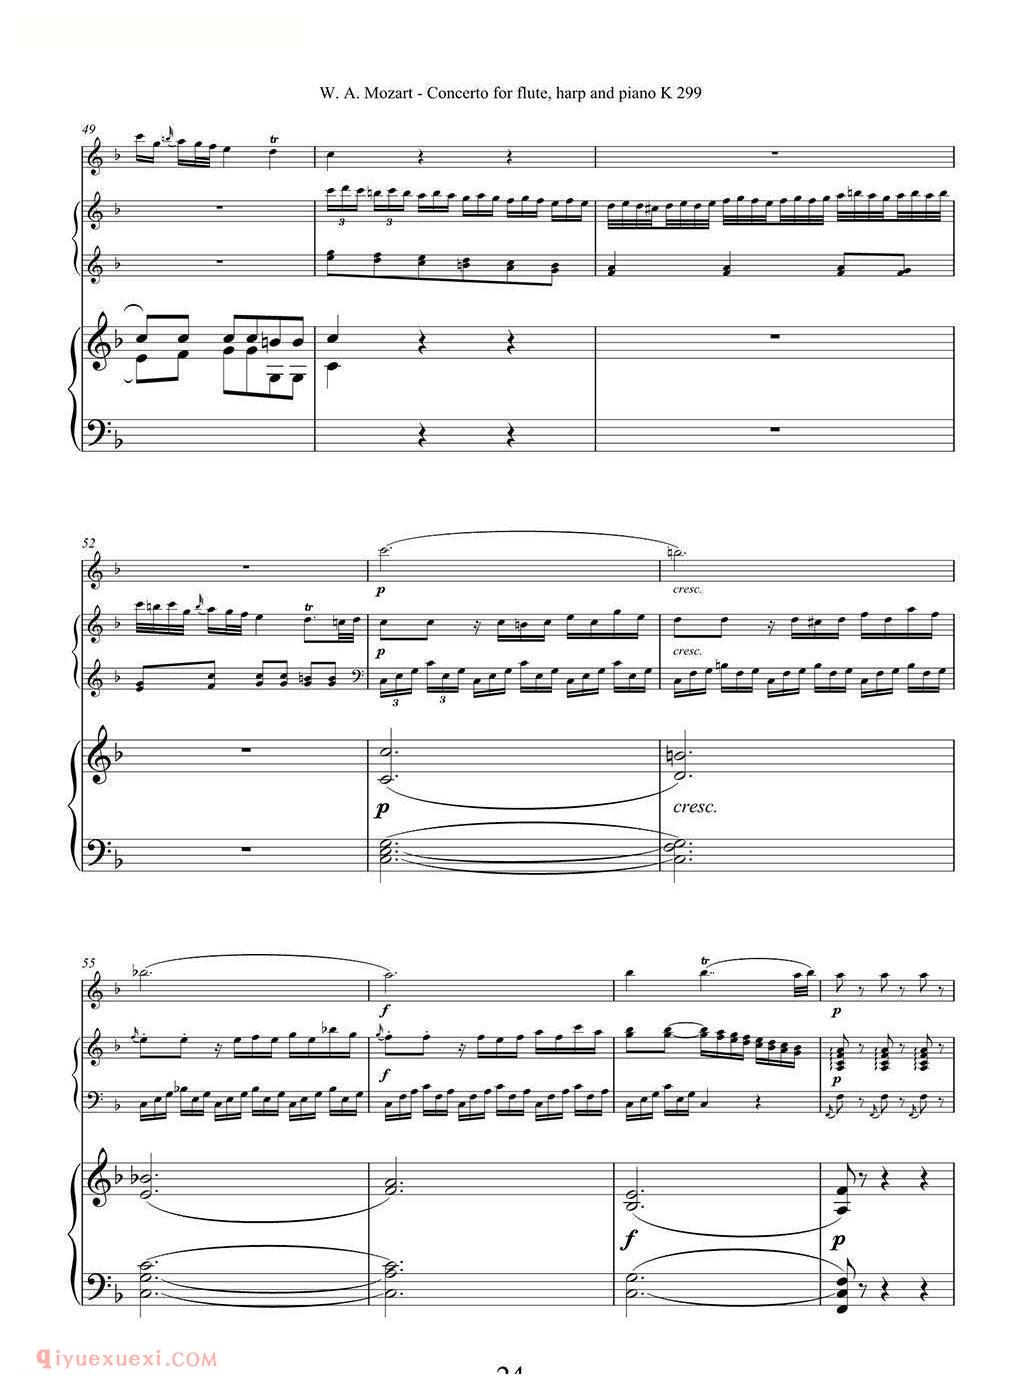 长笛竖琴钢伴谱/莫扎特C大调长笛竖琴协奏曲 K.299 Ⅱ